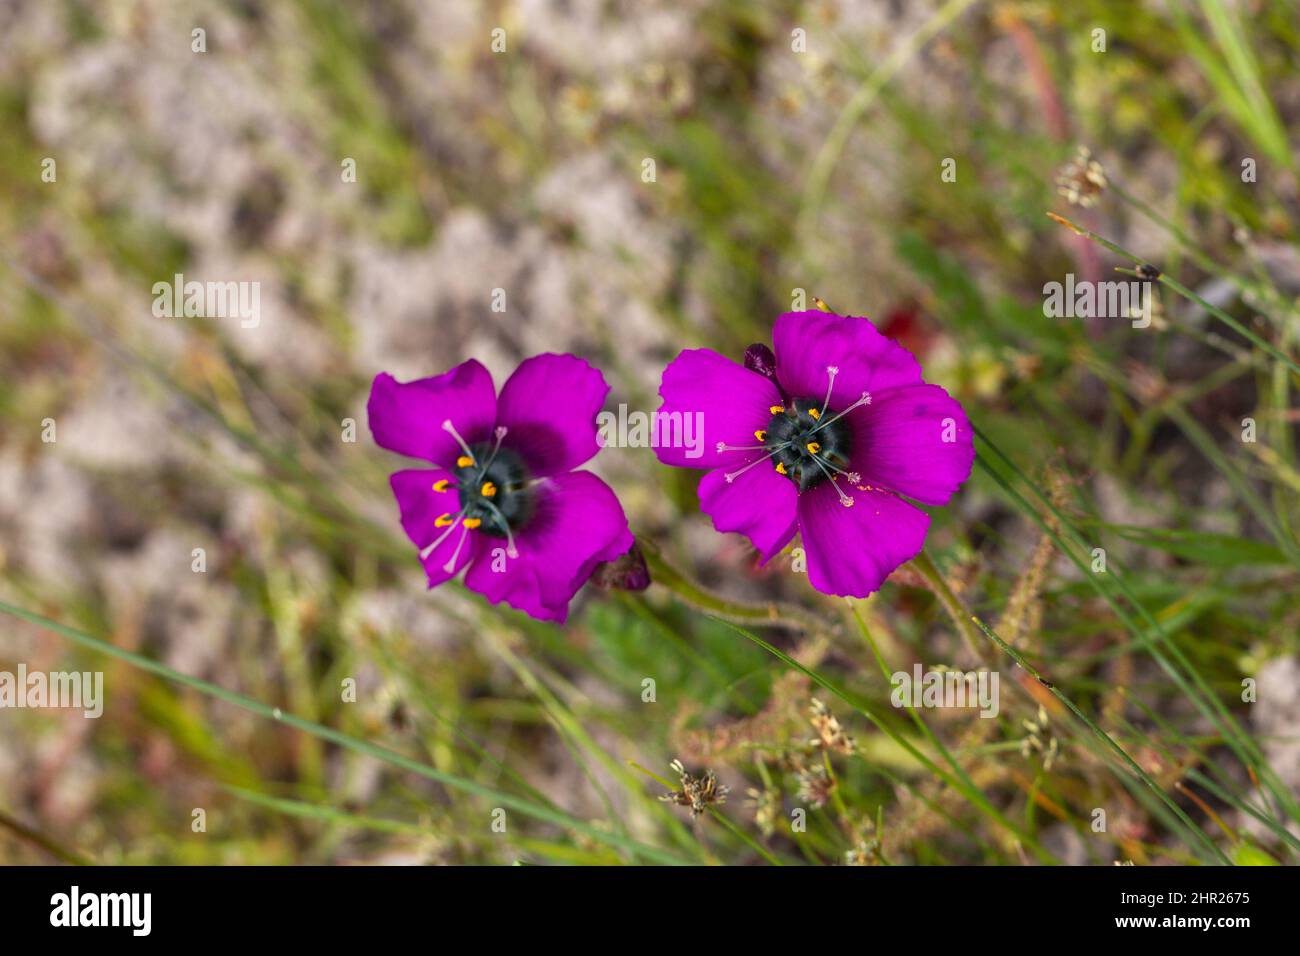 Deux fleurs violettes de la plante carnivore Drosera cistiflora prises dans  l'habitat naturel près de Malmesbury, dans le Cap occidental de l'Afrique  du Sud Photo Stock - Alamy